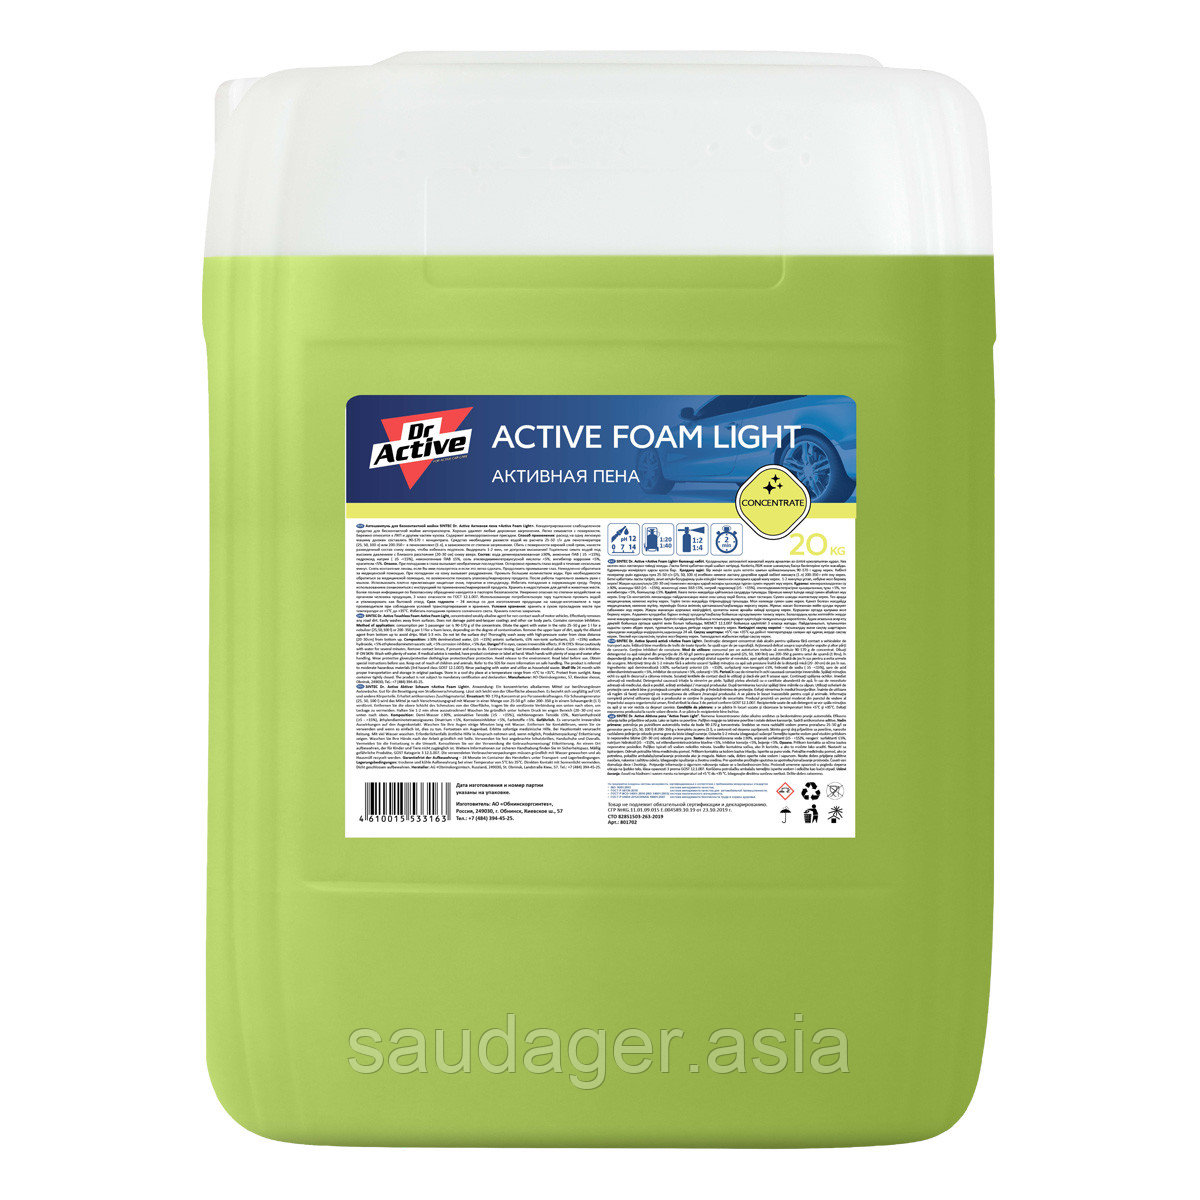 Sintec Dr. Active Активная пена "Active Foam Light" (20 кг)